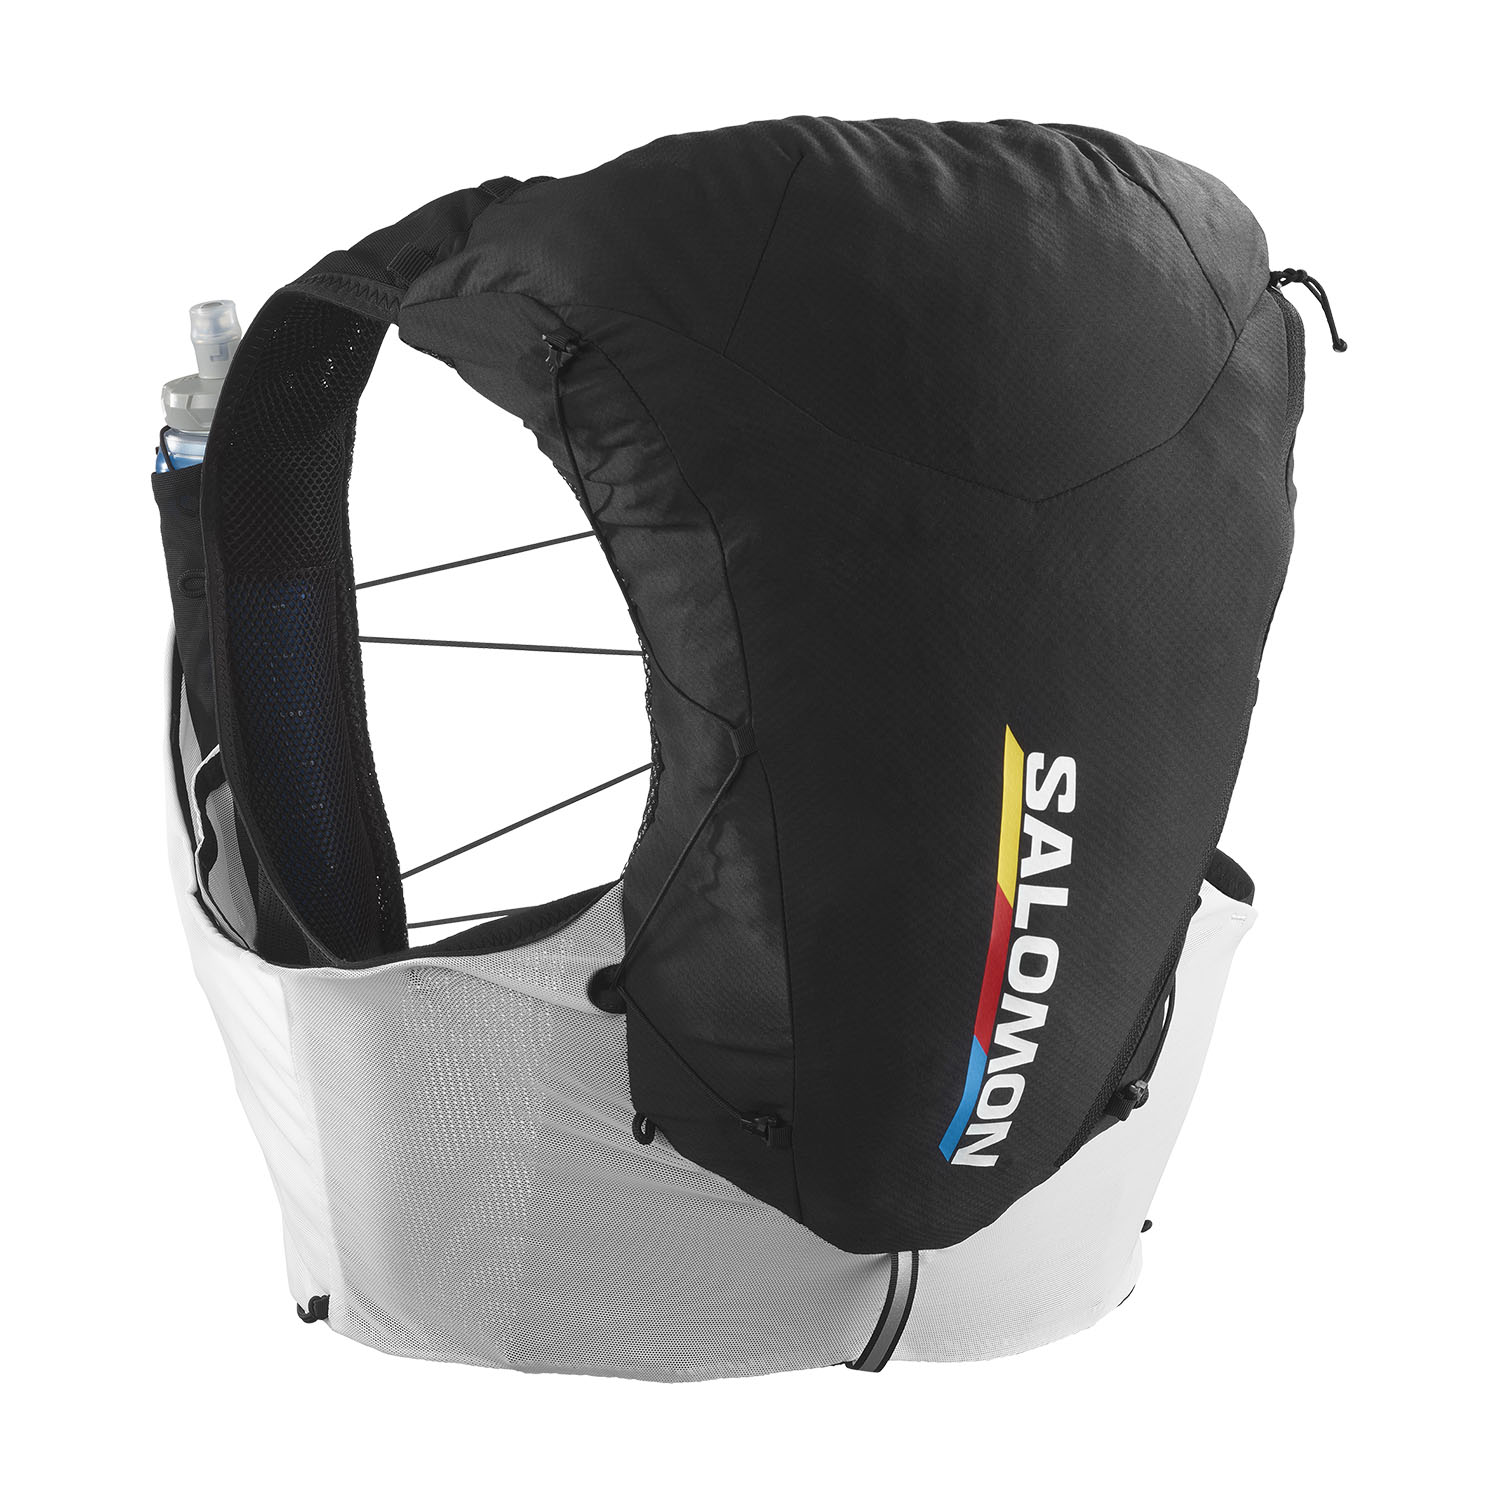 Salomon ADV Skin Set 12 Race Flag Backpack - Black/White